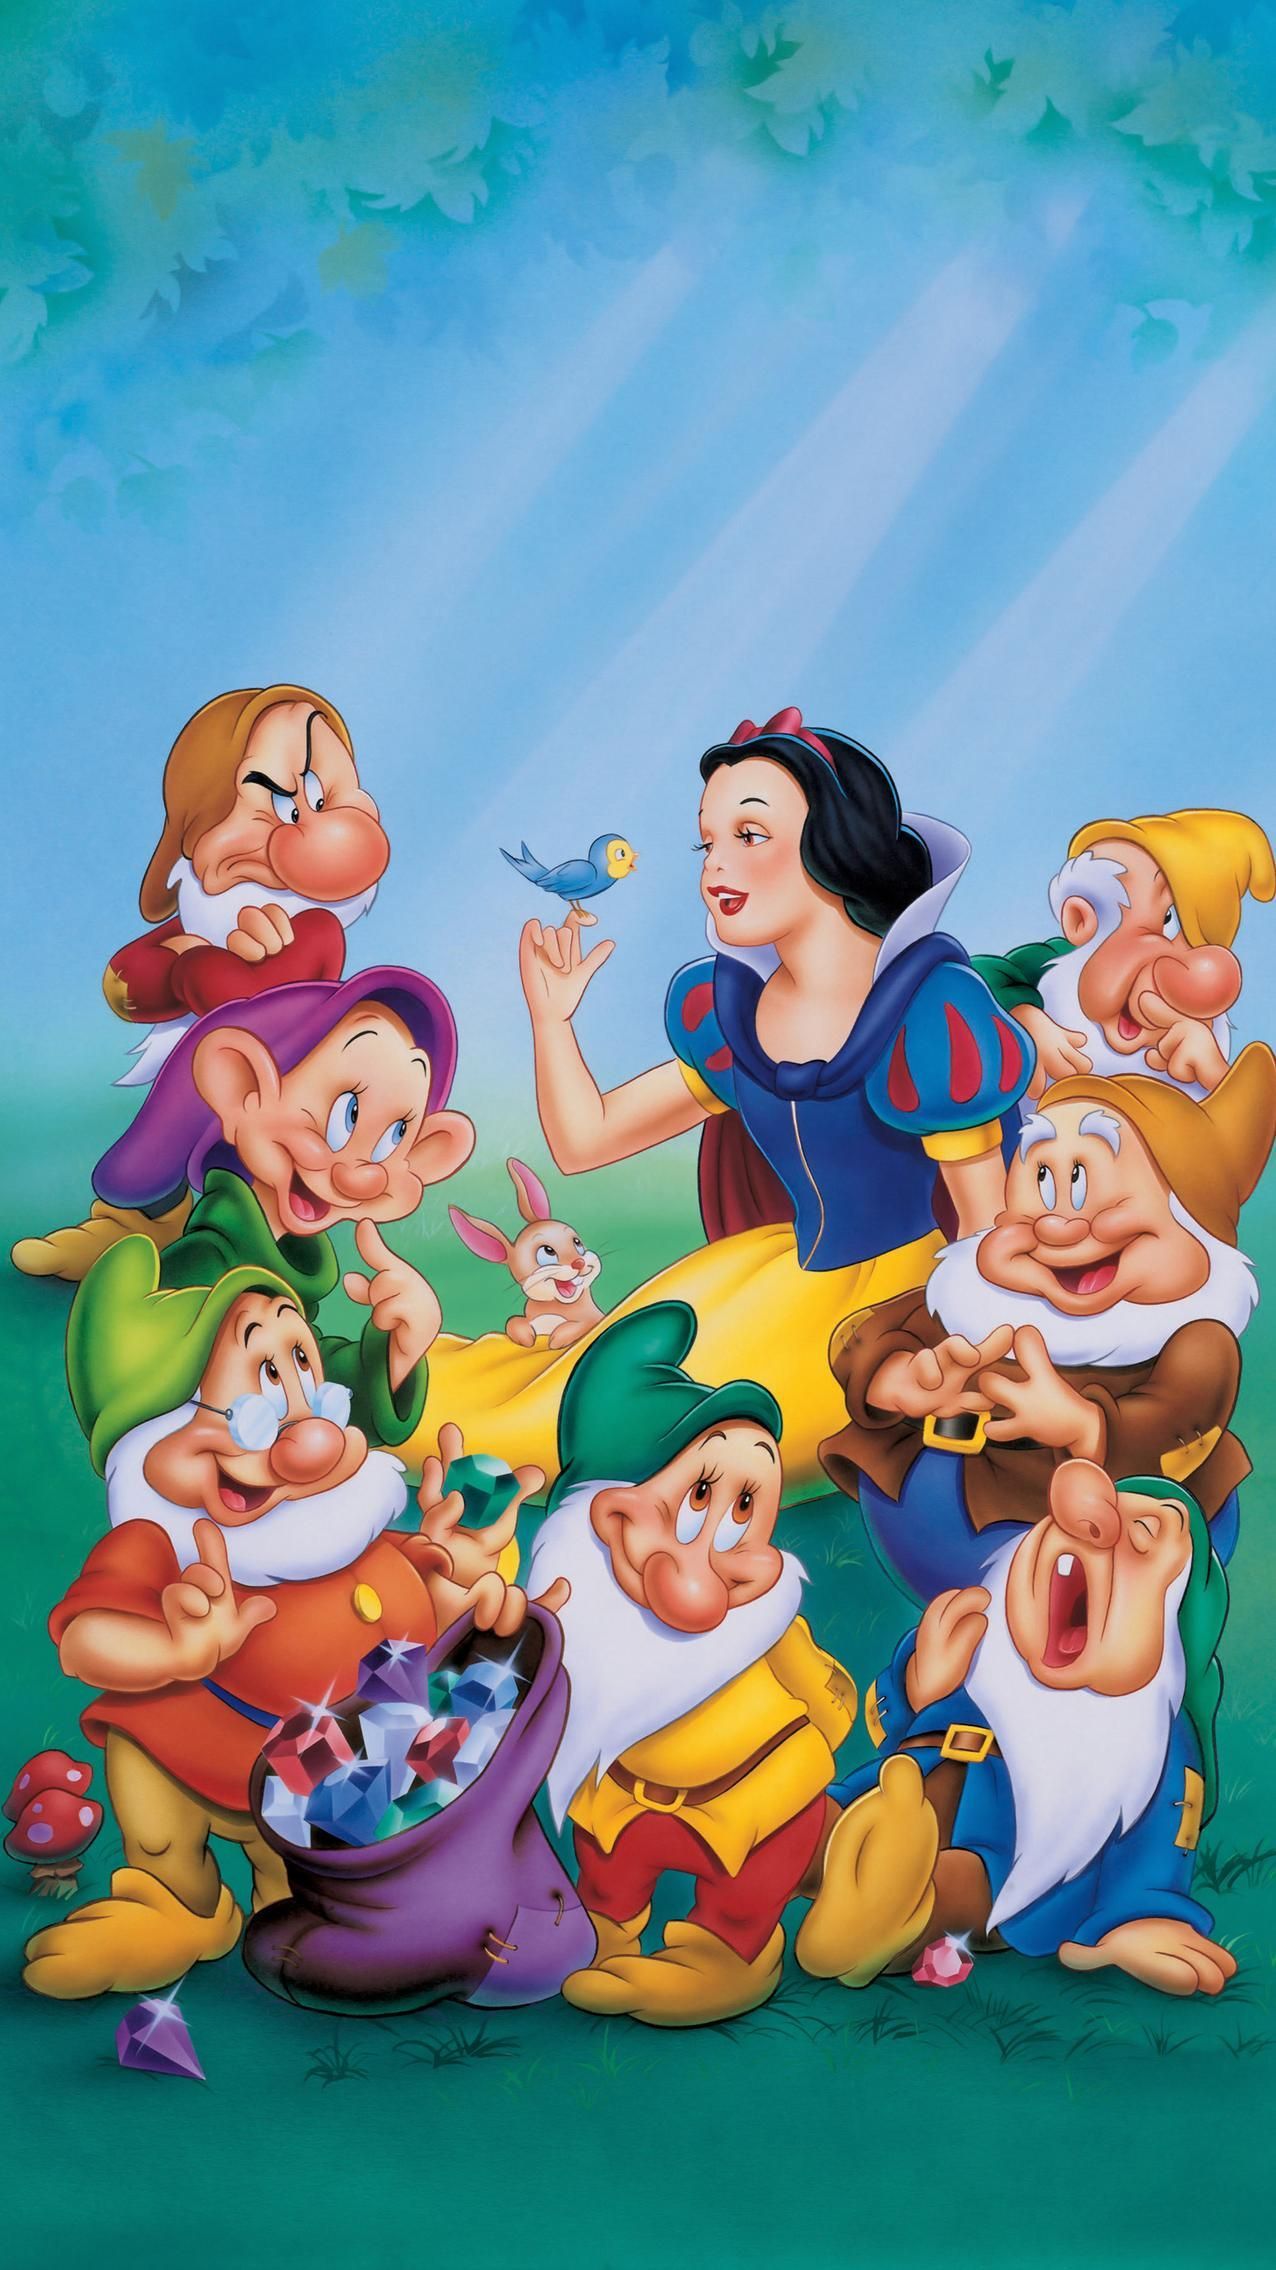 Snow White and the Seven Dwarfs 1937 .com